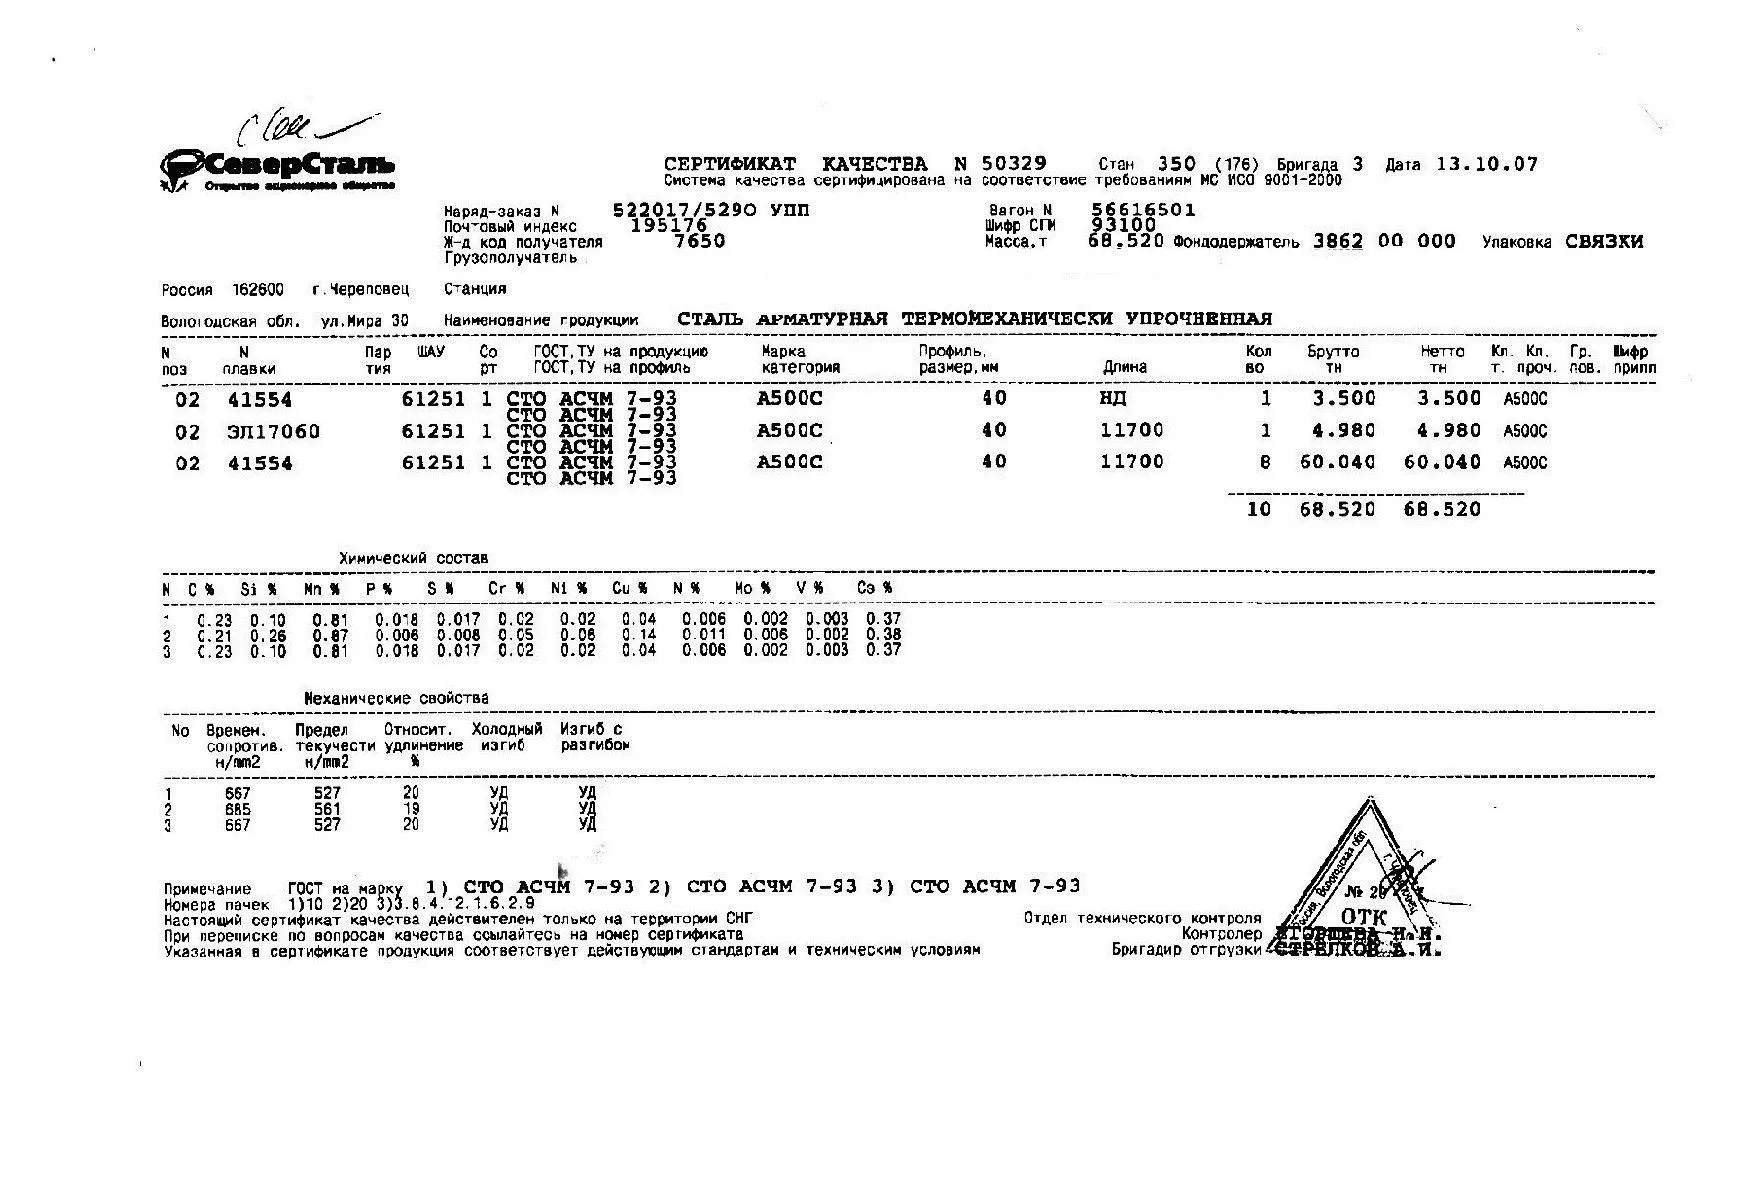 Сертификат на арматуру (класса А3) 40 (А500С) от 2007-10